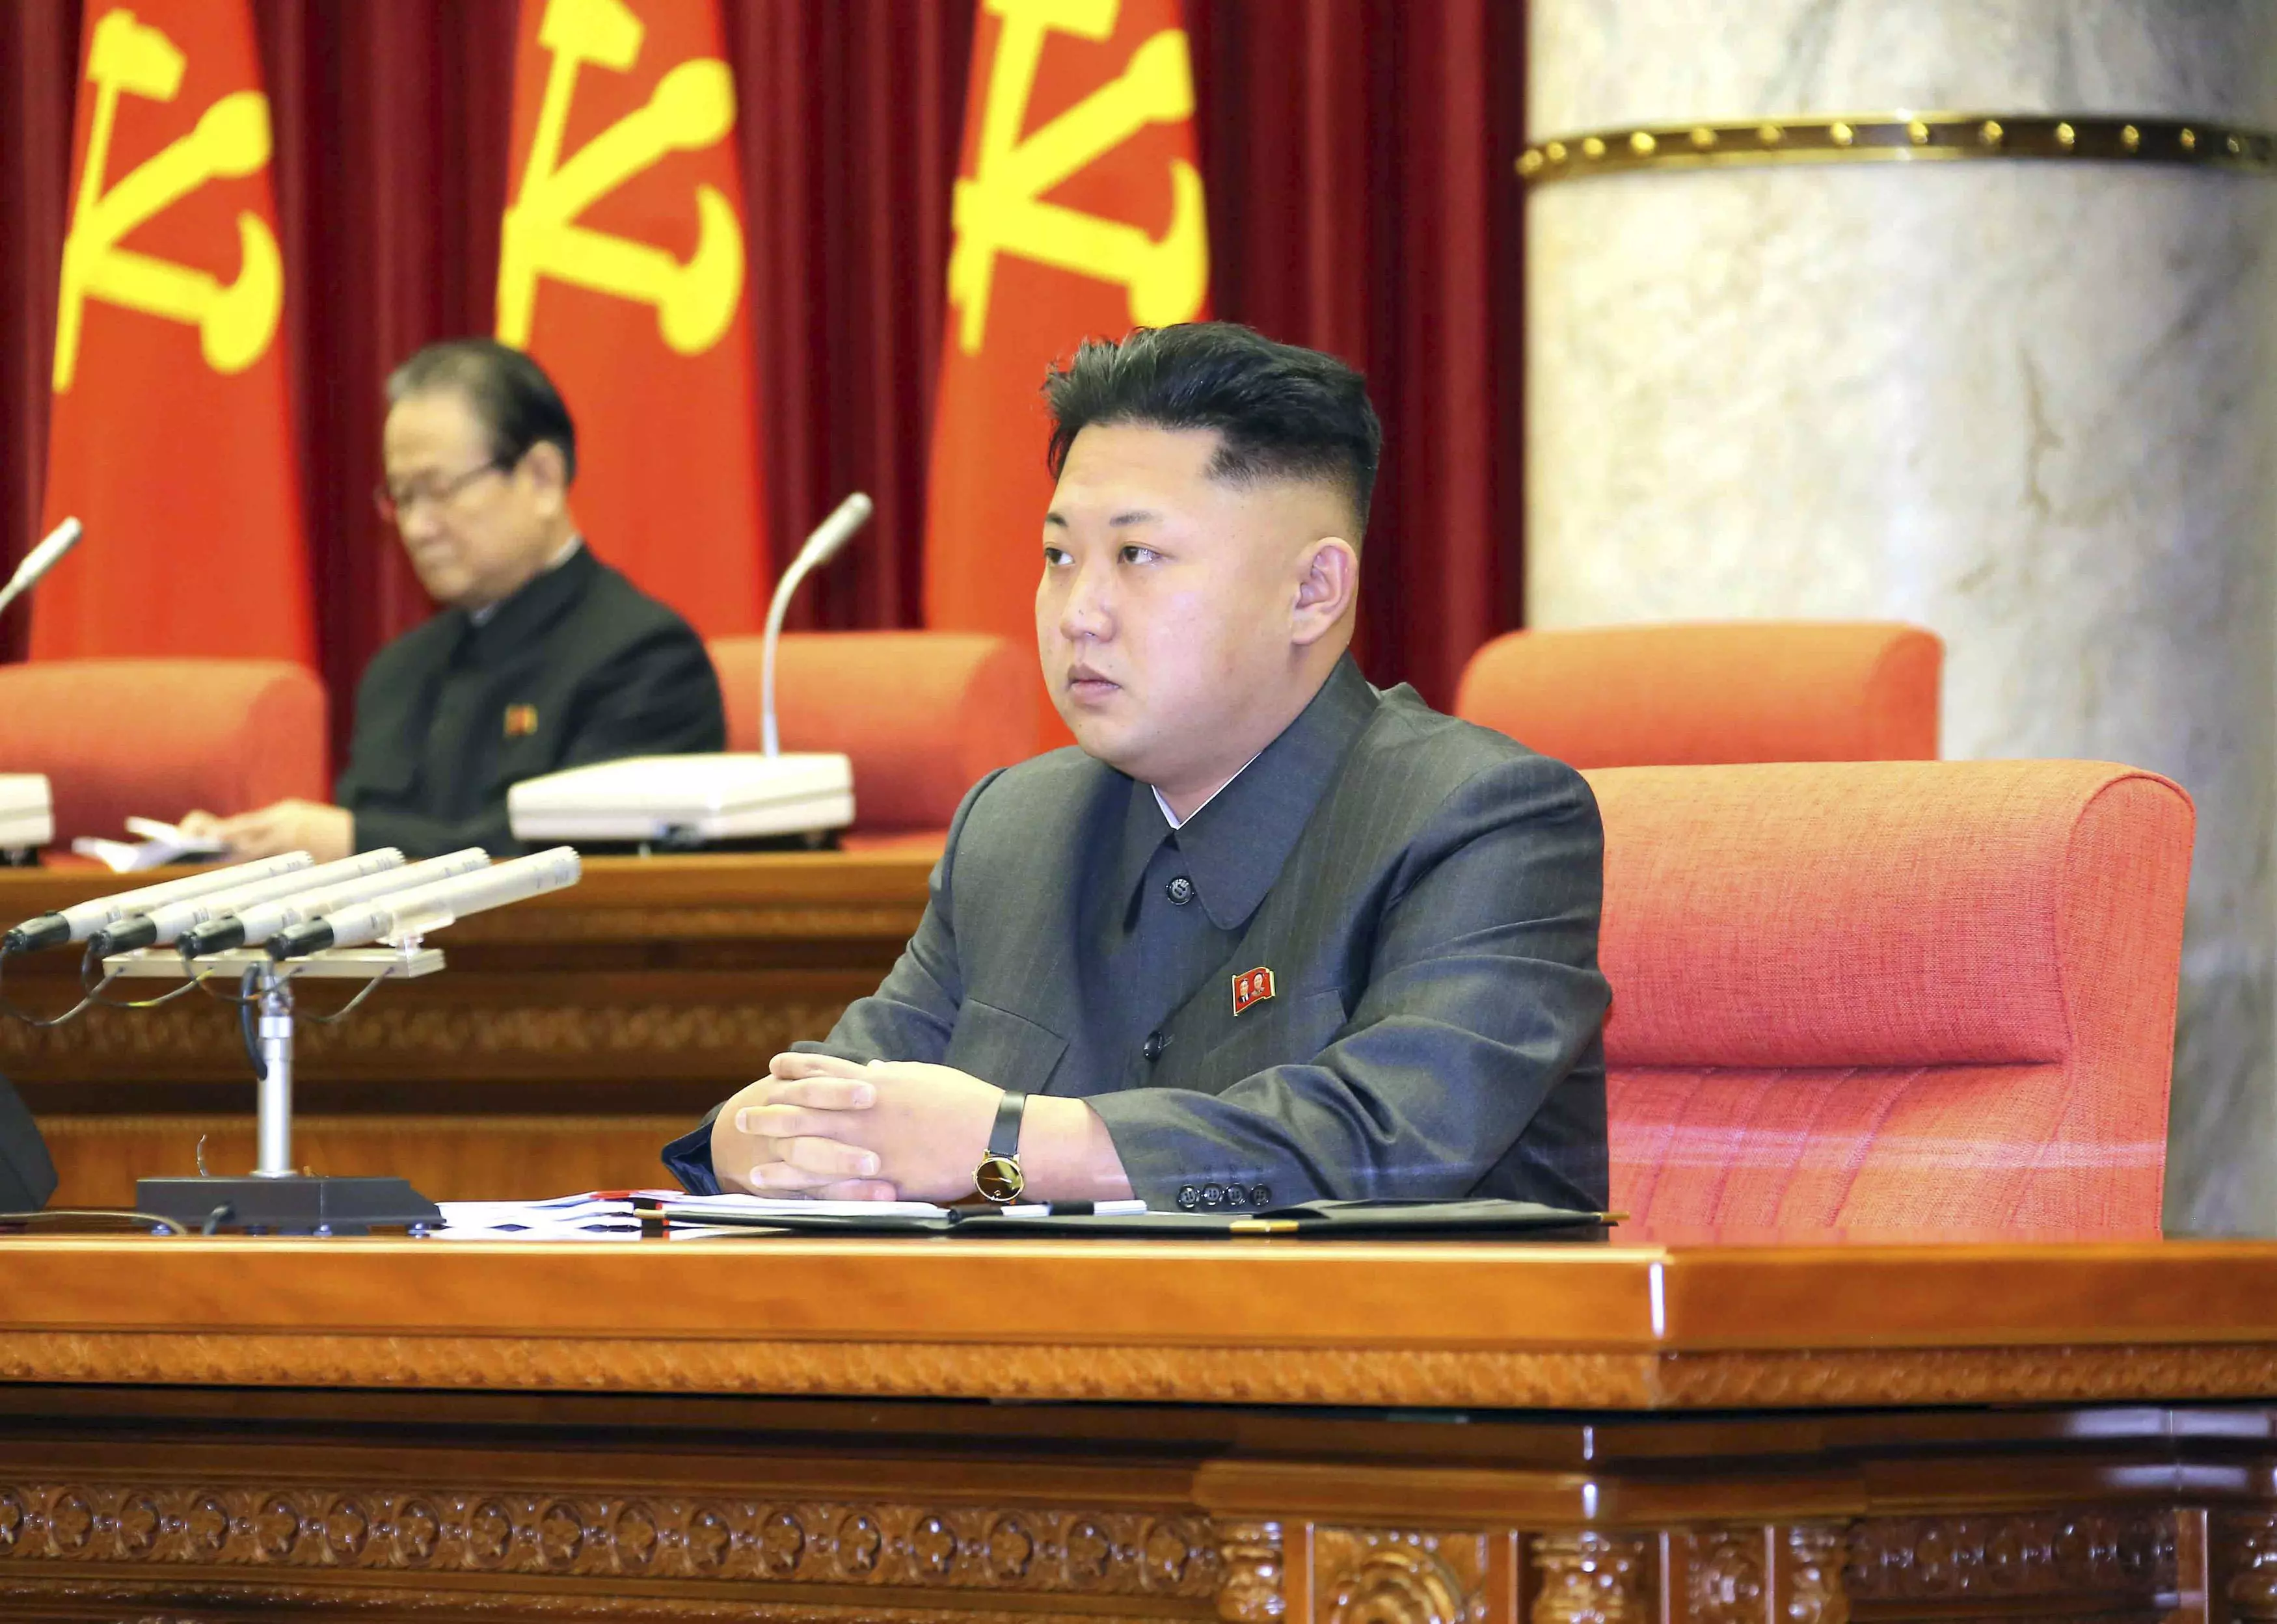 שליט קוריאה הצפונית, הרודן קים ג'ונג-און